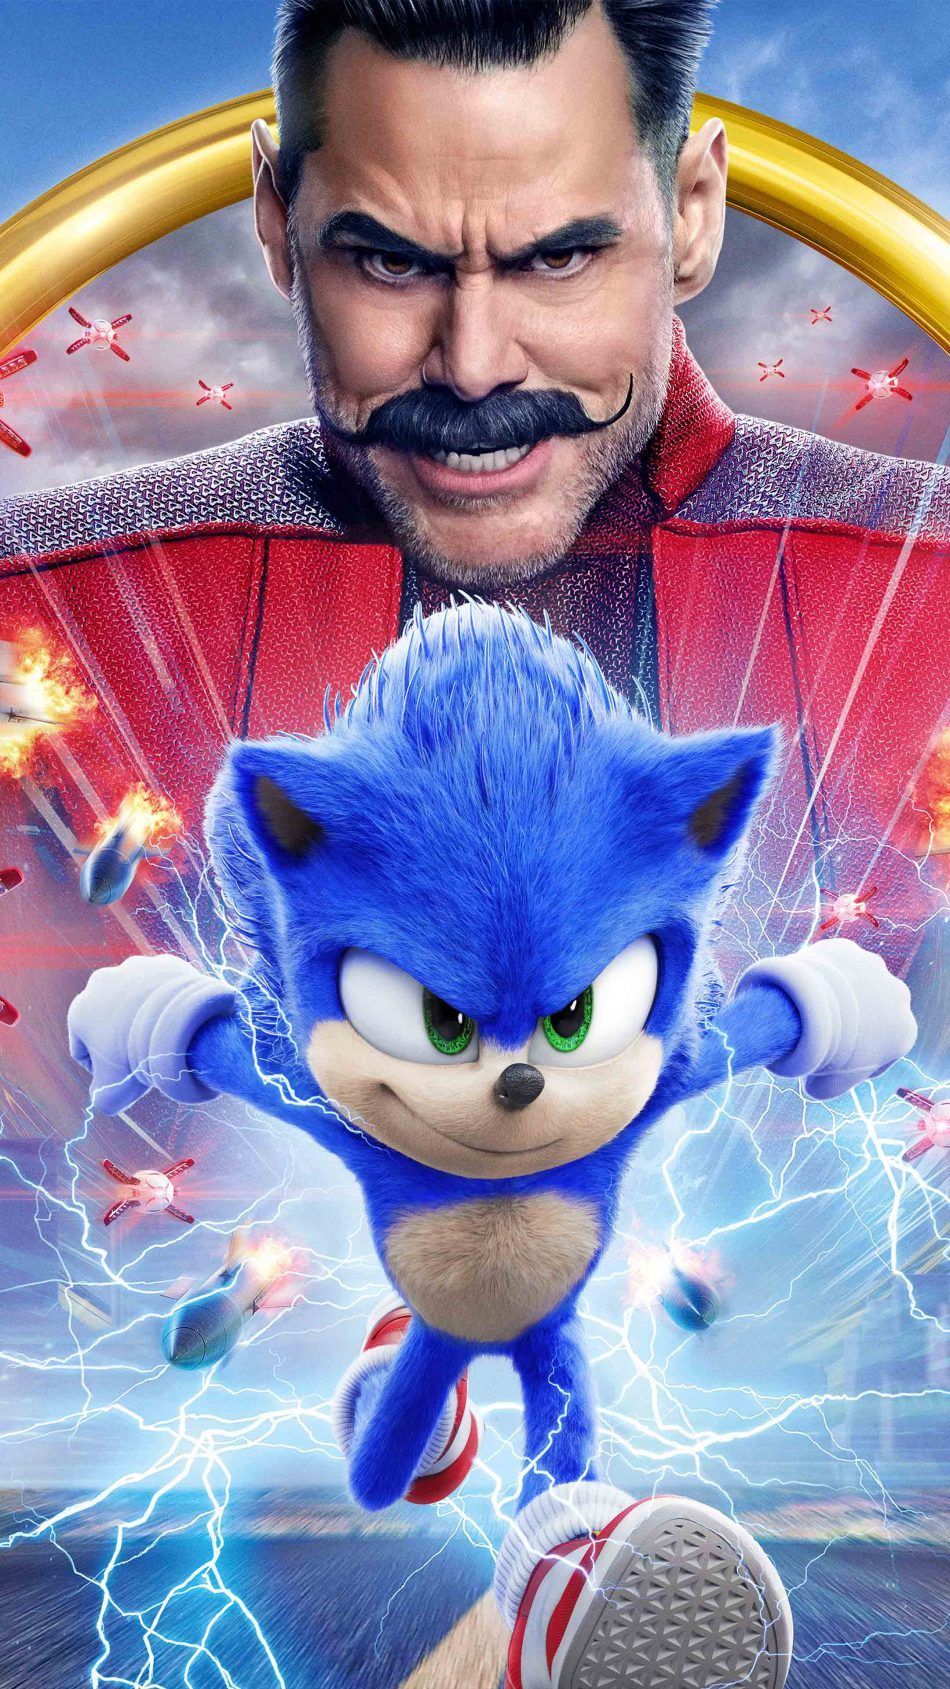 Sonic The Hedgehog 2020. Sonic the hedgehog, Hedgehog movie